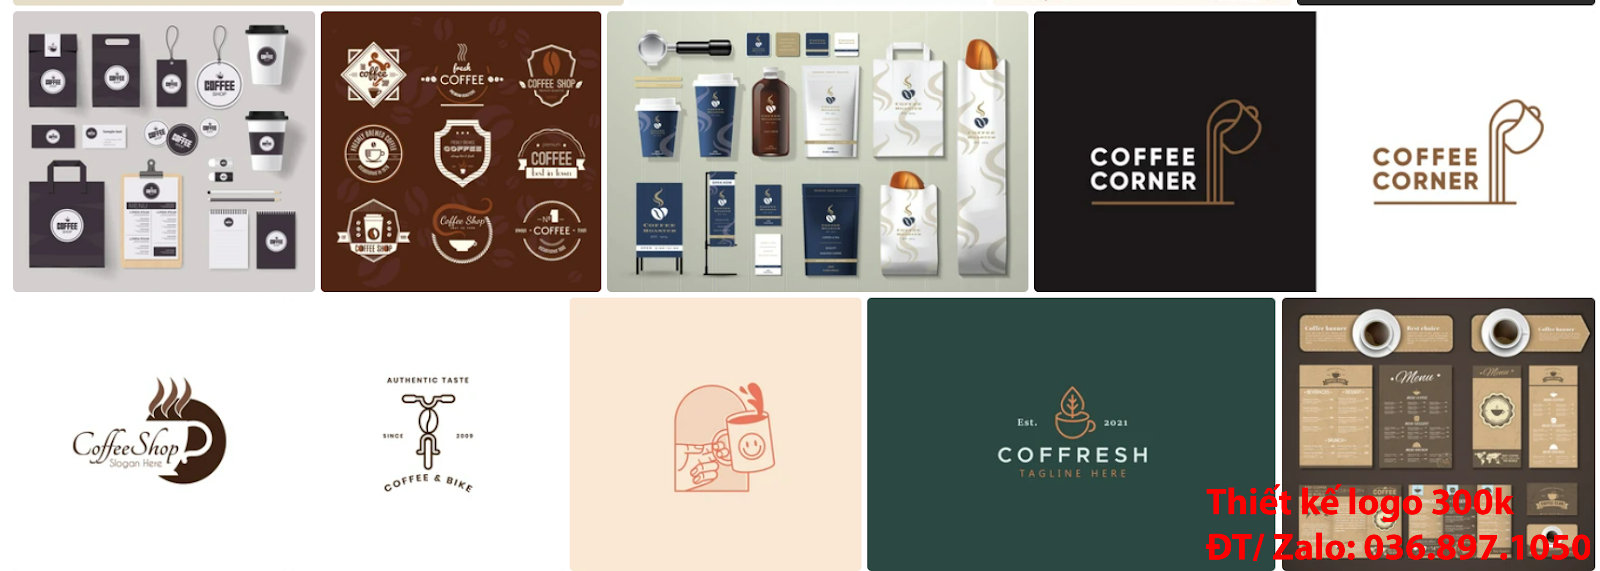 Công ty tạo mẫu thiết kế logo cà phê cafe coffee đẹp giá rẻ online chất lượng